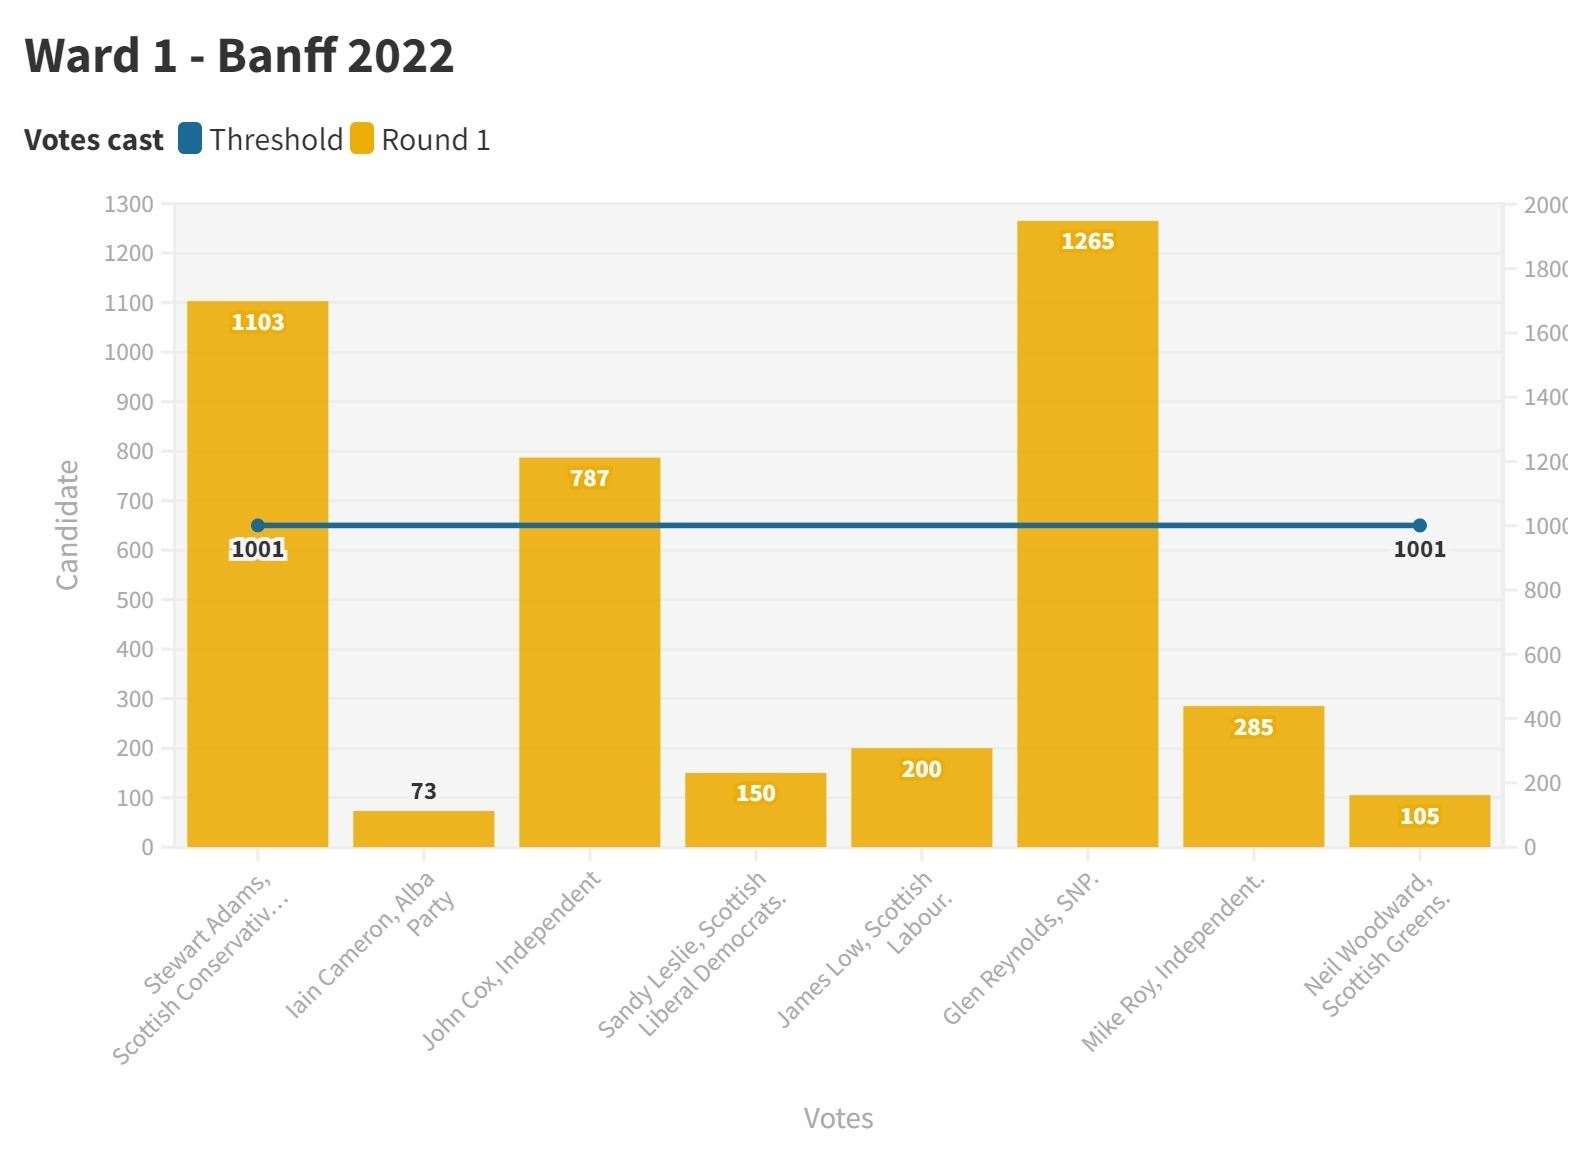 Ward 1 - Banff 2022